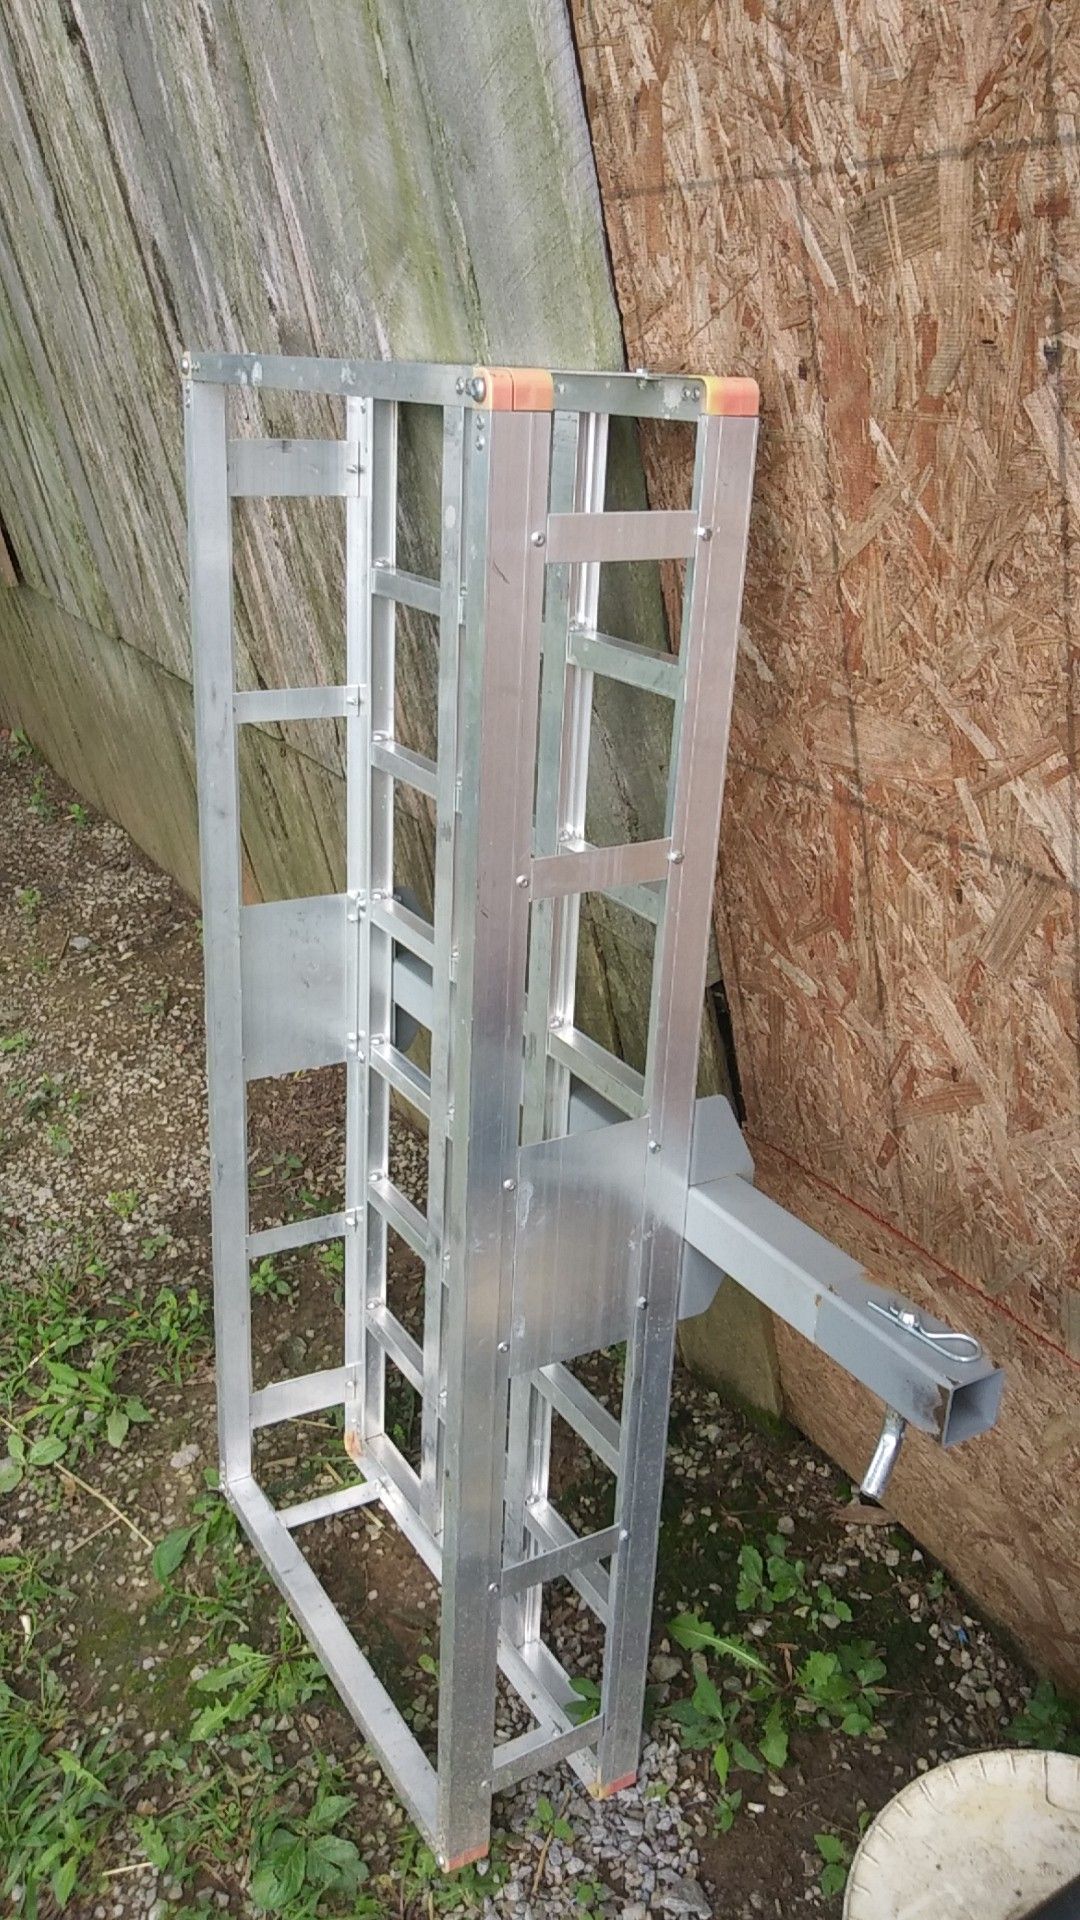 Haul master aluminum cargo rack